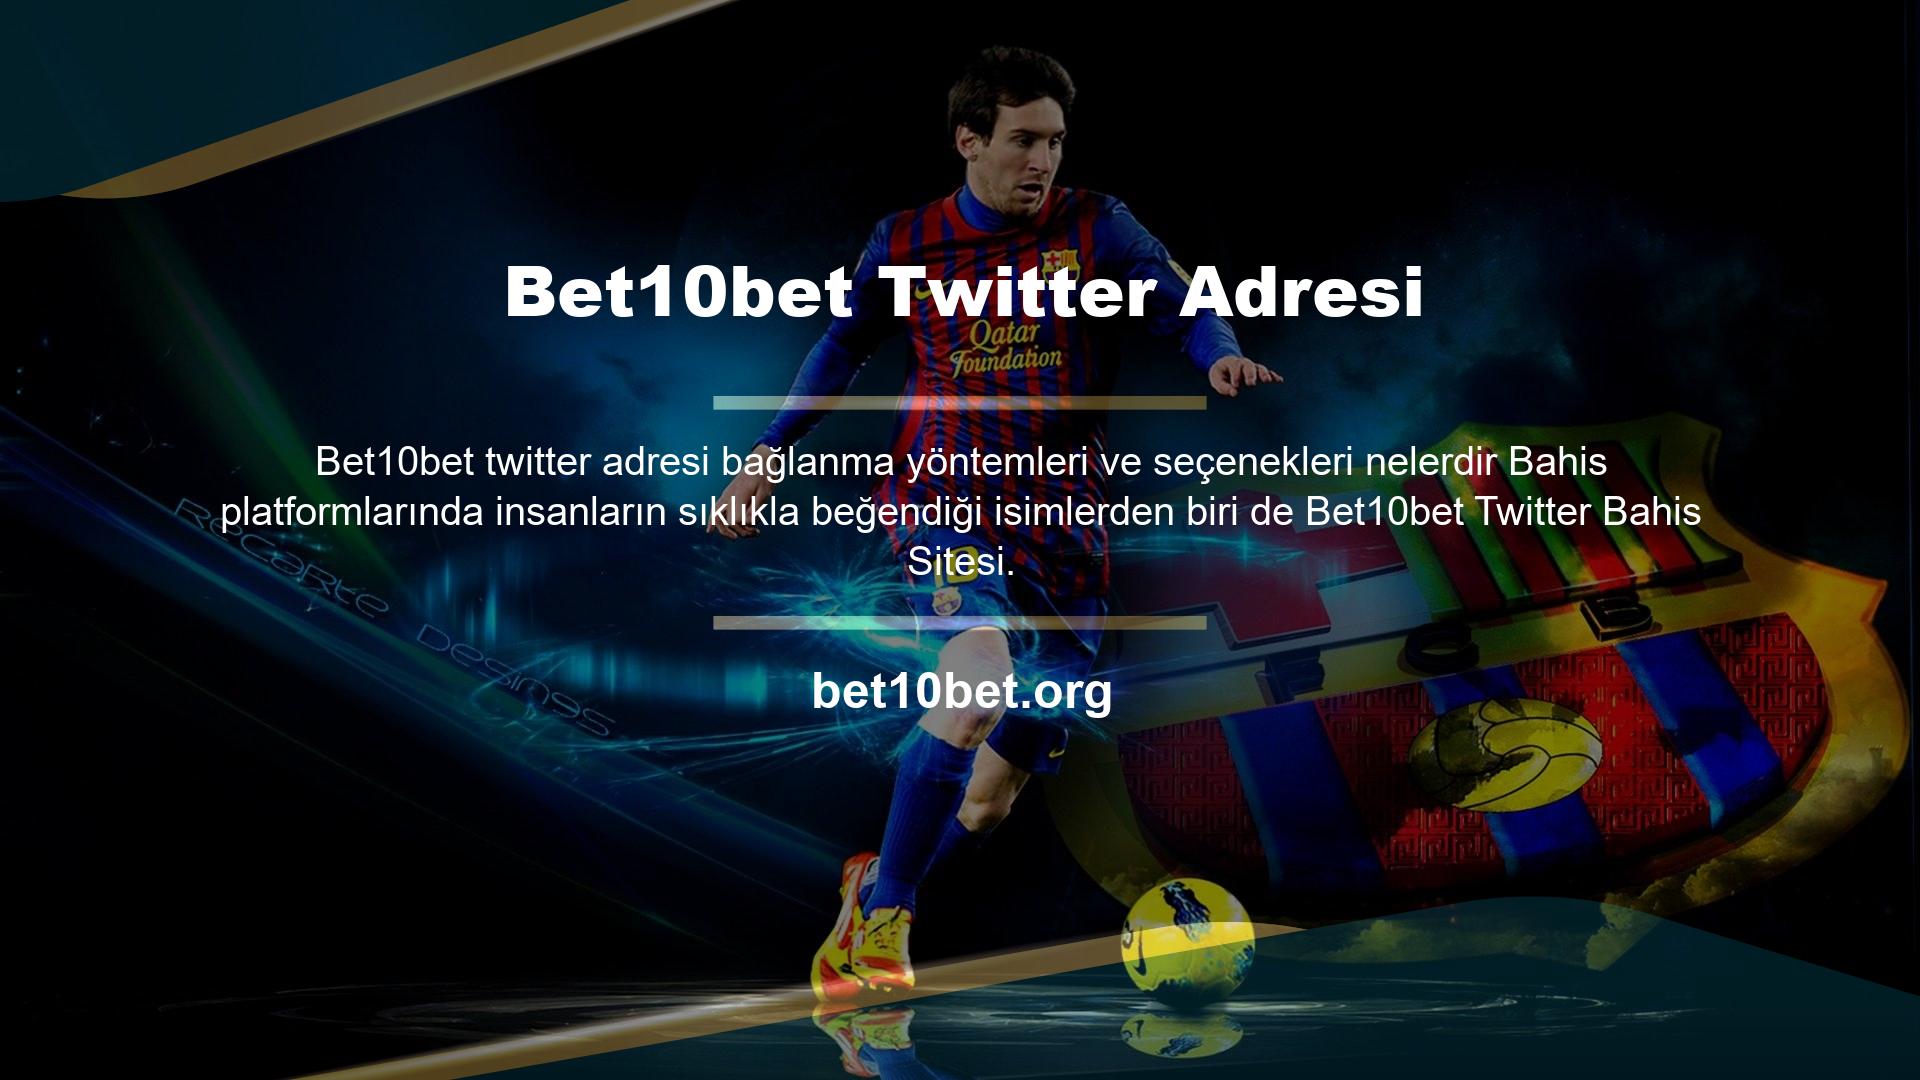 Eski adı Bet10bet Twitter olan Twitter, Türkiye'de bir online oyun platformudur